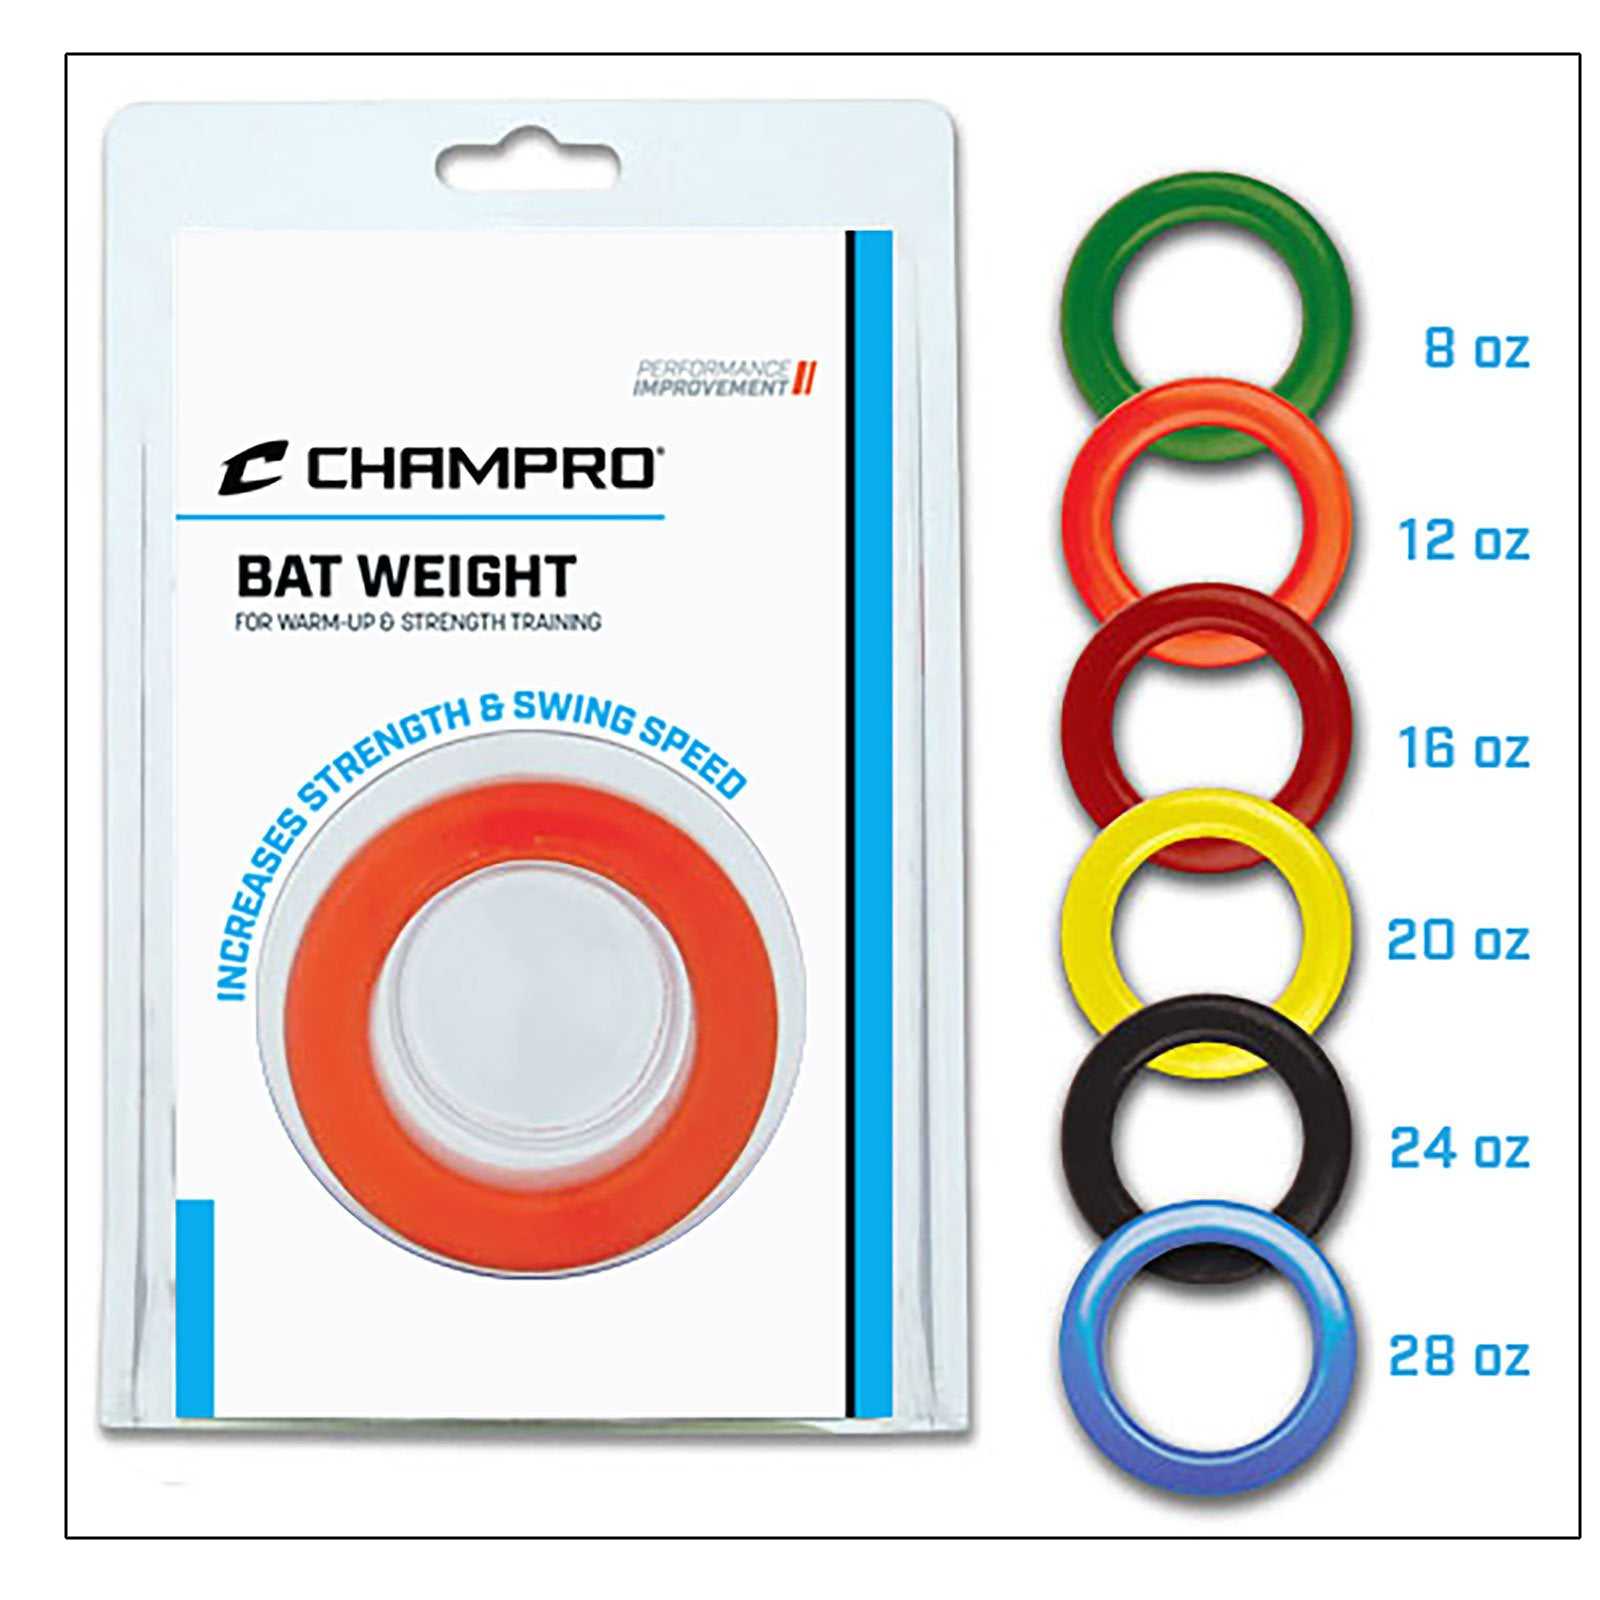 Champro A014 Bat Weight 8 oz - Green - HIT a Double